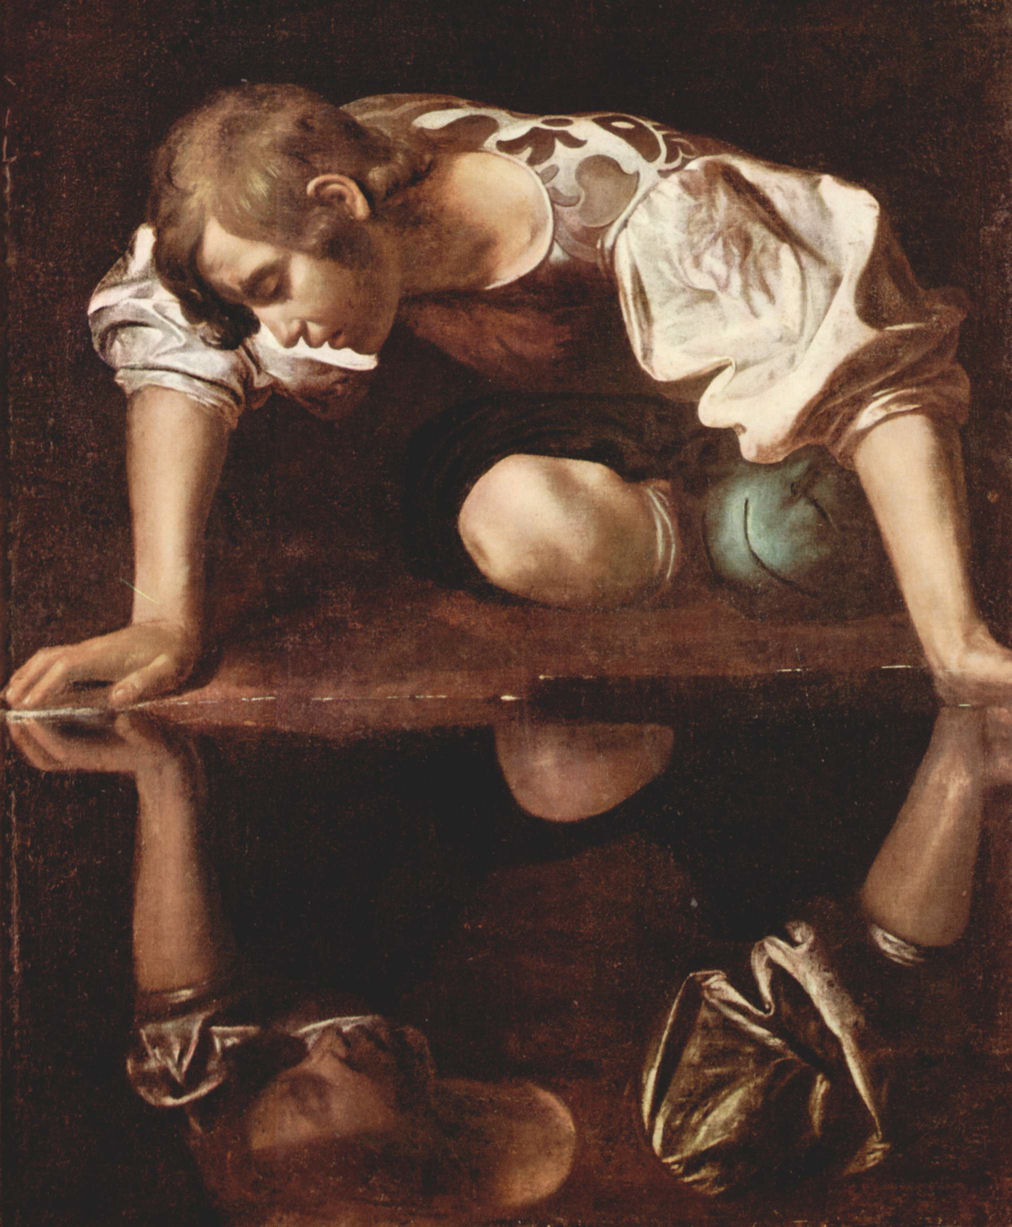 Caravaggio, "Narciso" (1597-1599), olio su tela, 112x92, Palazzo Barberini - Galleria Nazionale d'Arte Antica, Roma